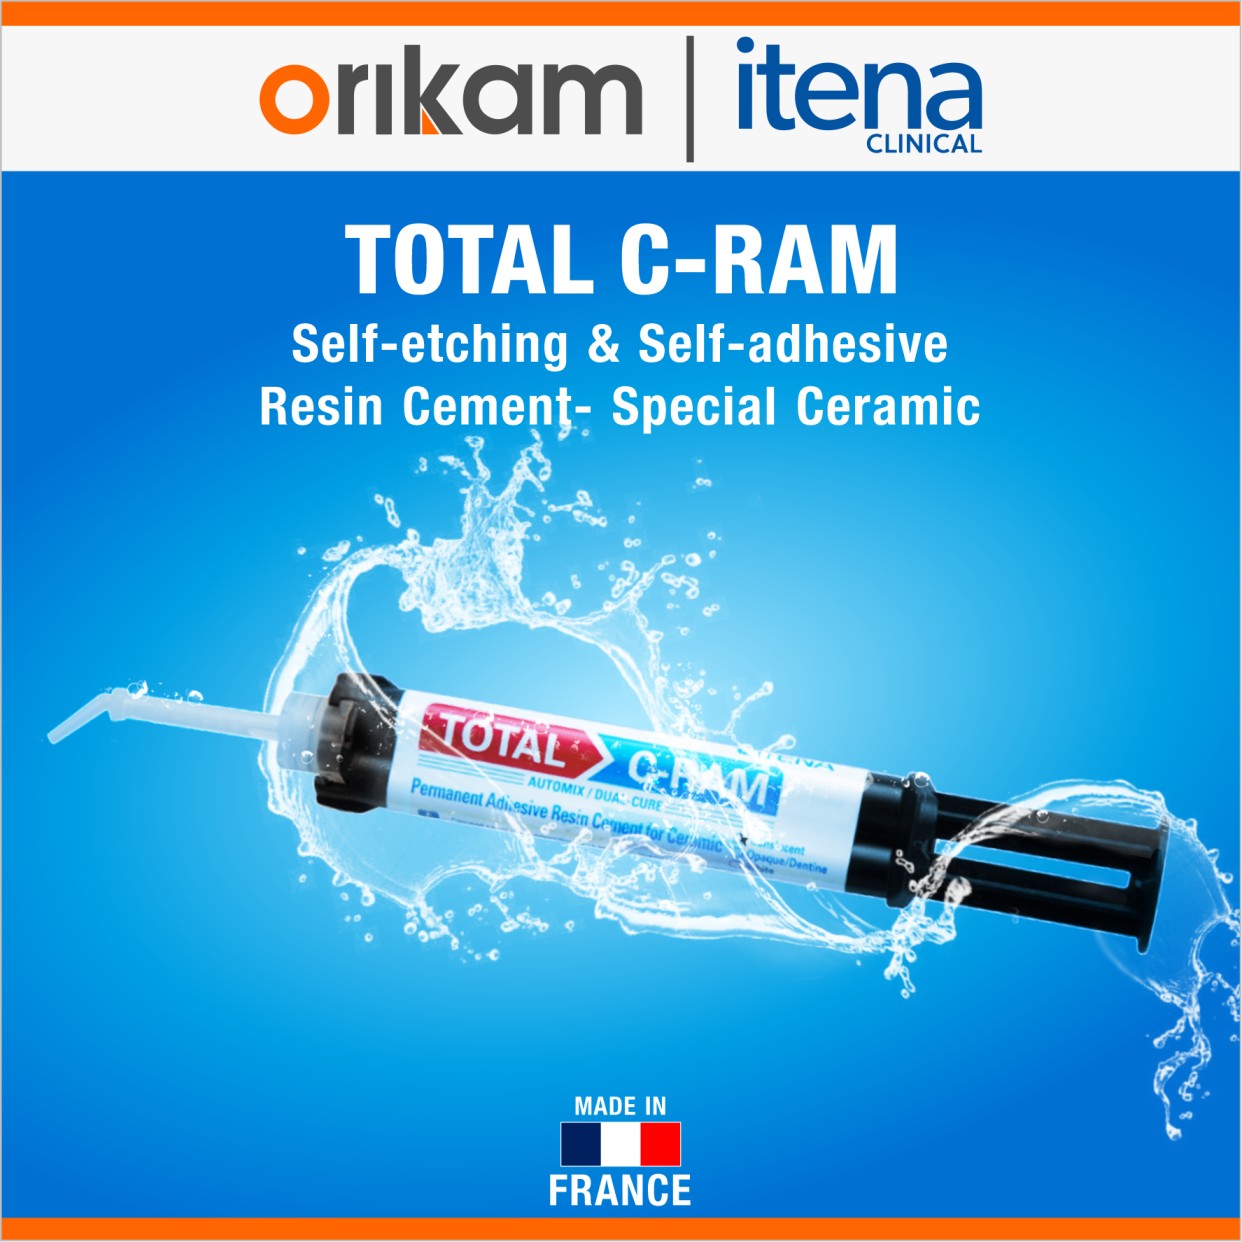 Orikam Total C-RAM